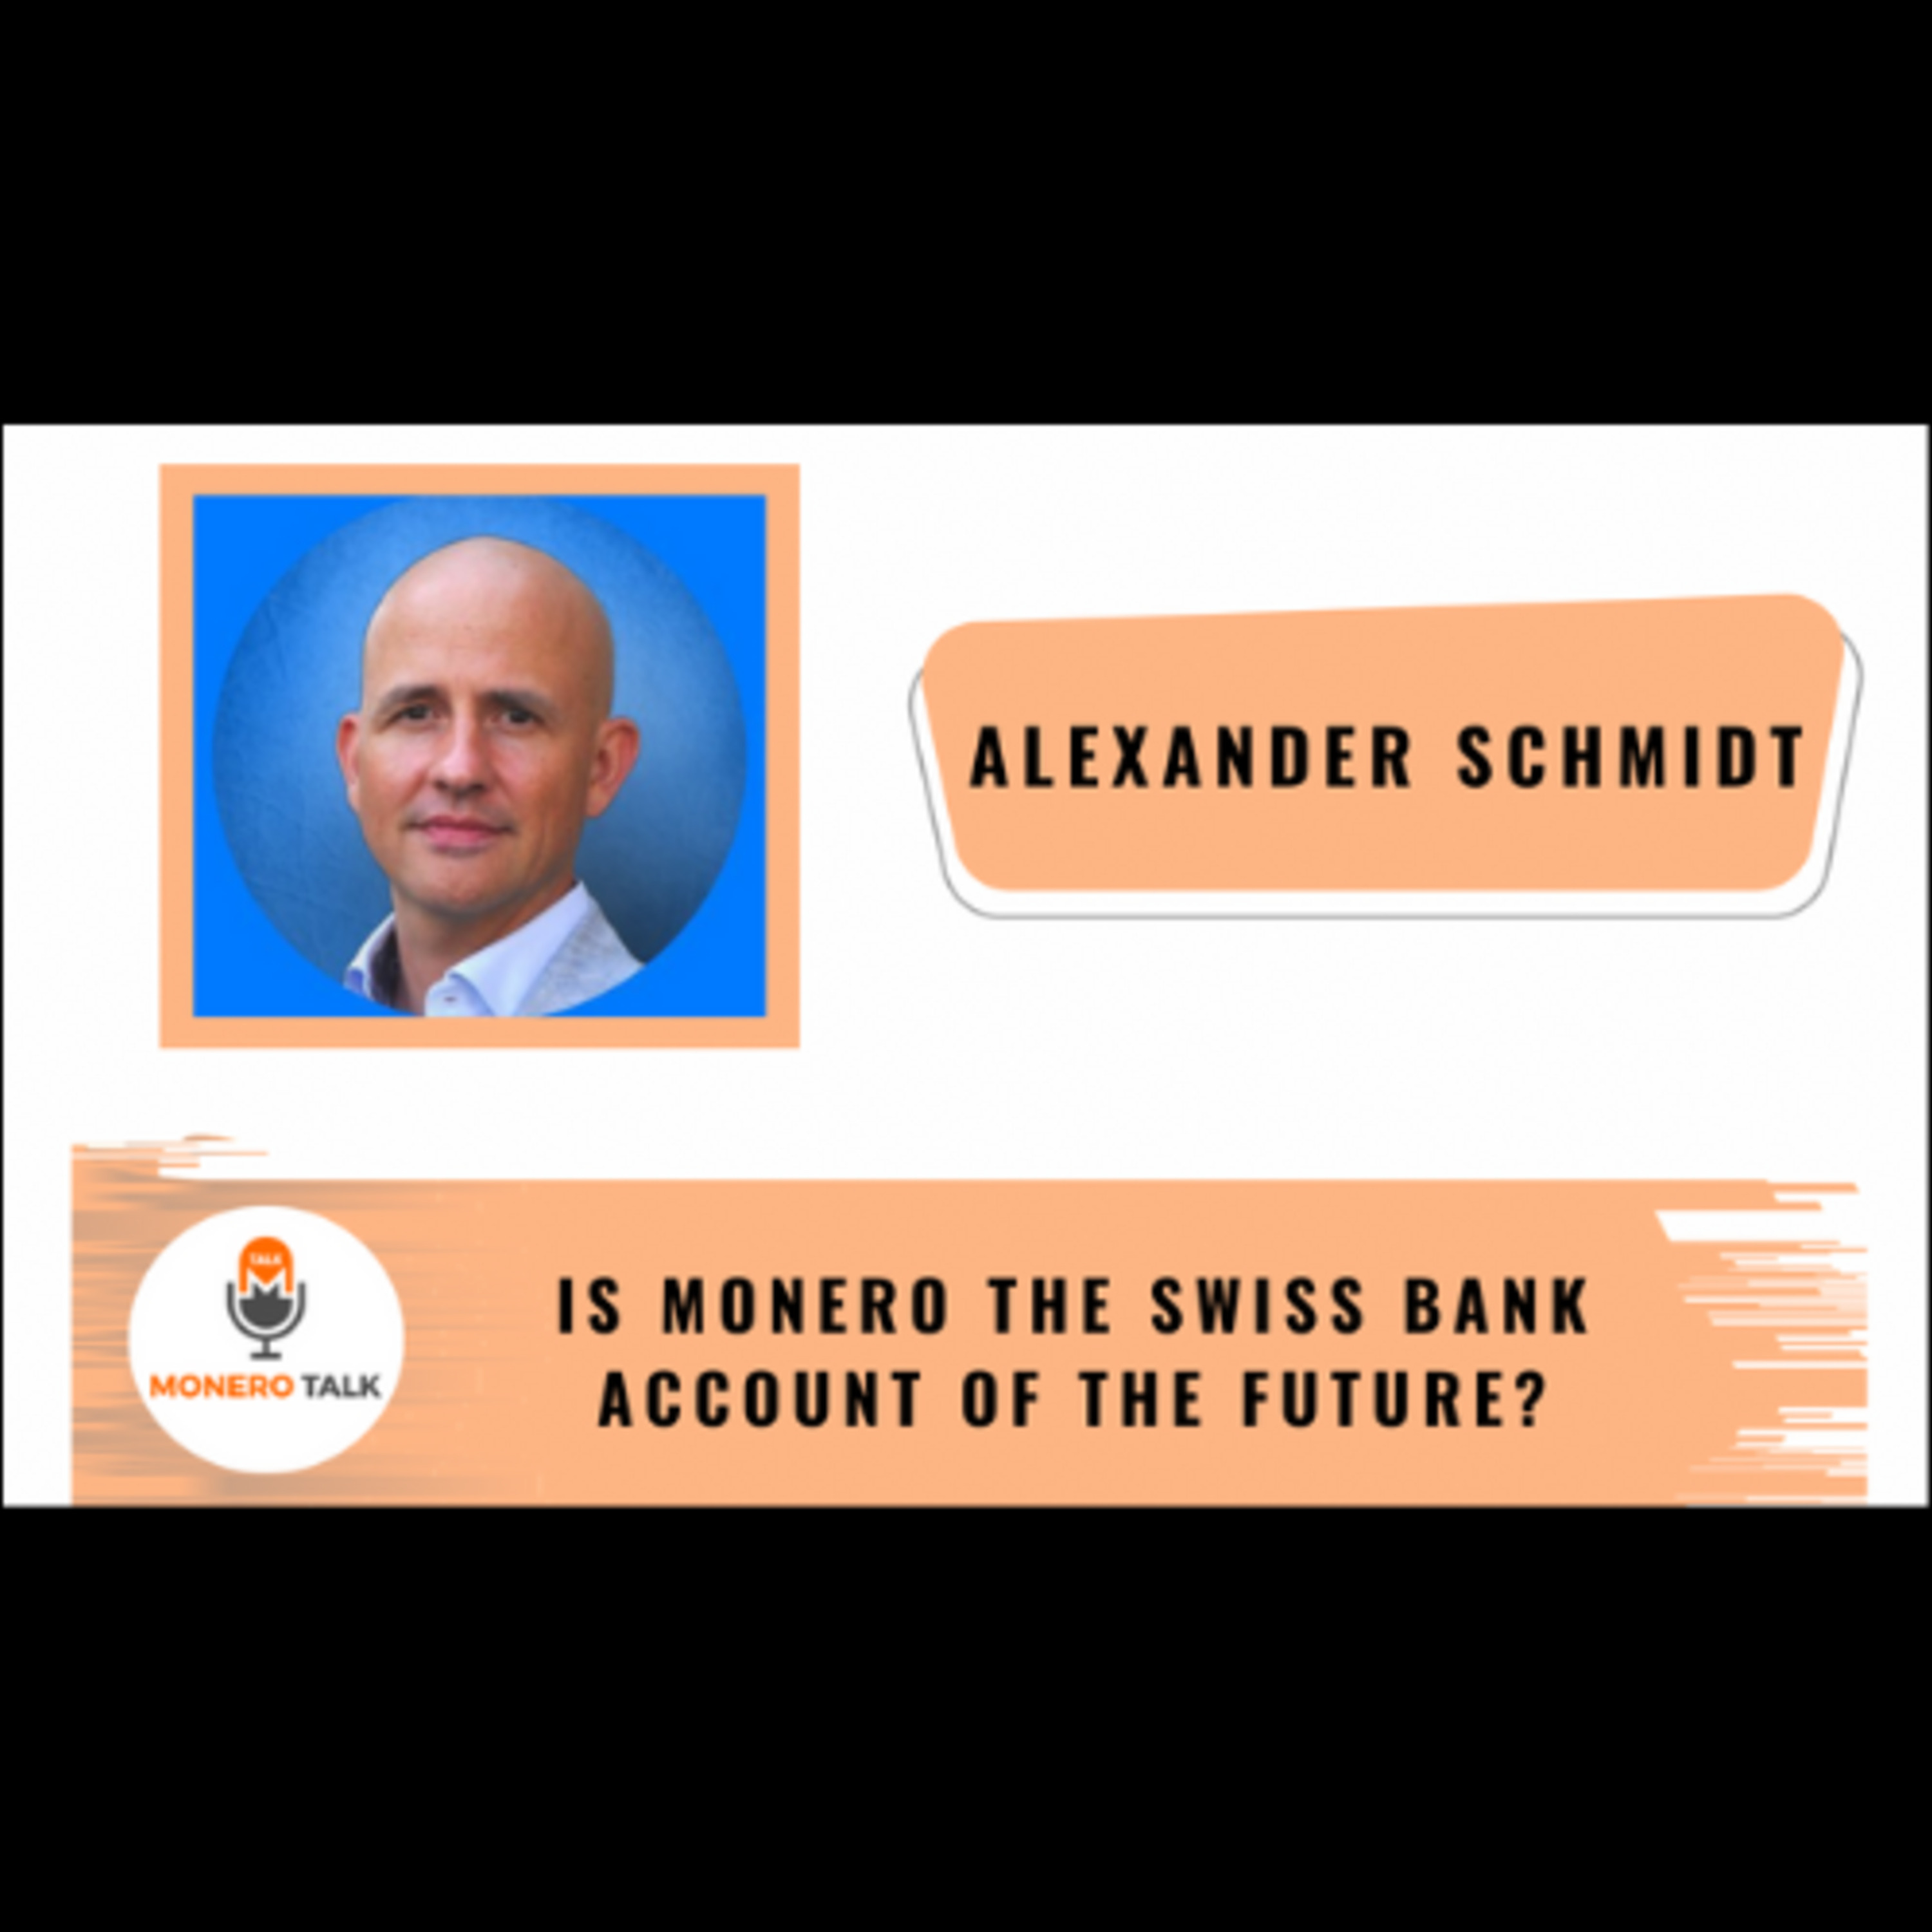 Is Monero the Swiss Bank Account of the Future? - Alexander Schmidt